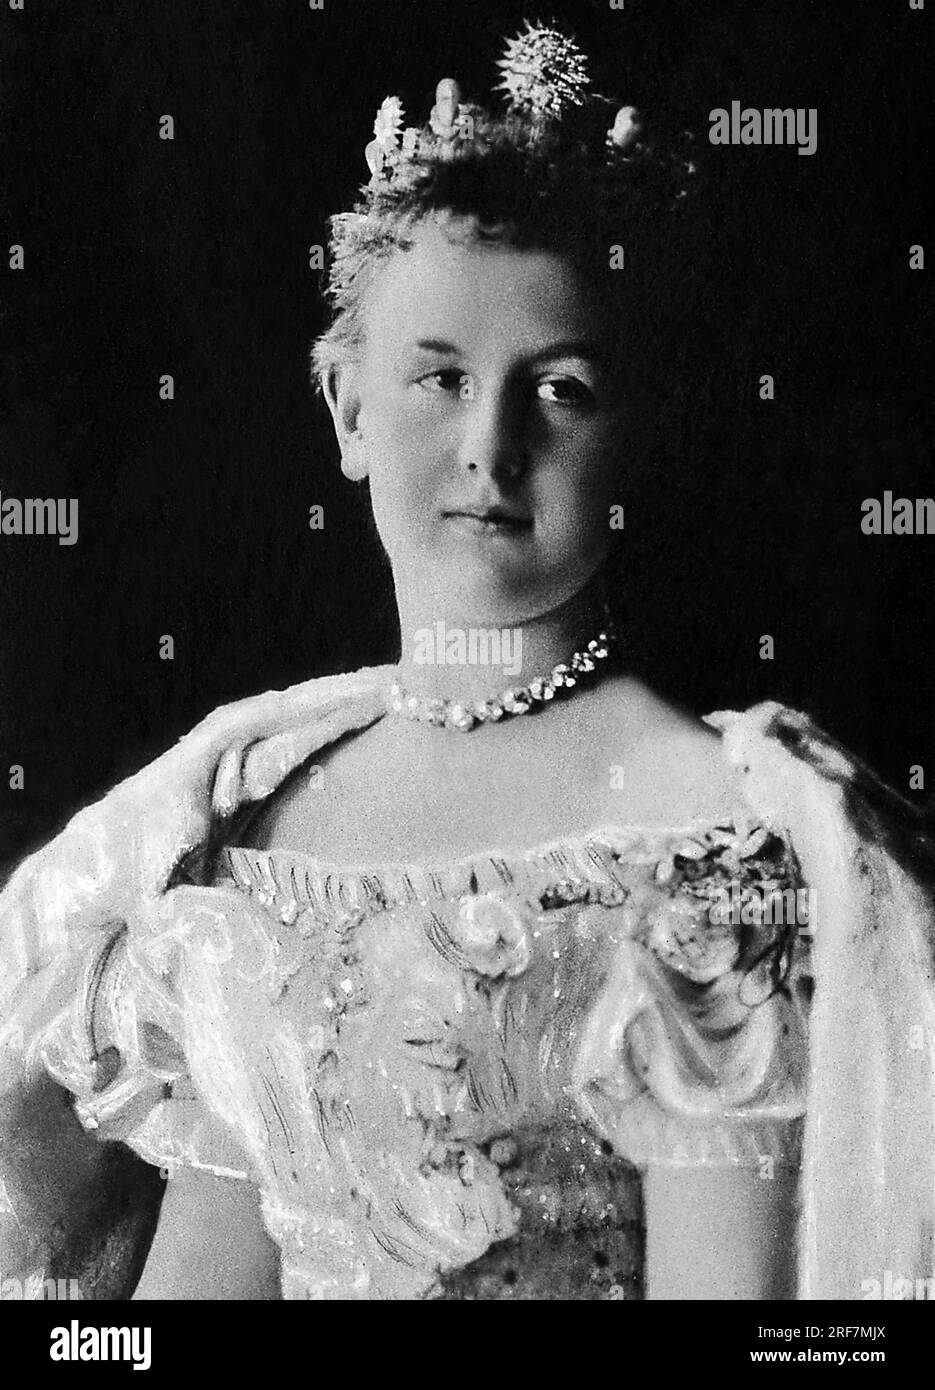 Wilhelmine d'Orange-Nassau (1880-1962), Reine des Pays-Bas de 1890 a 1948, fille de Guillaume III, elle abdique en faveur de sa fille Juliana. Photographie, debut du 20e siecle. Stock Photo